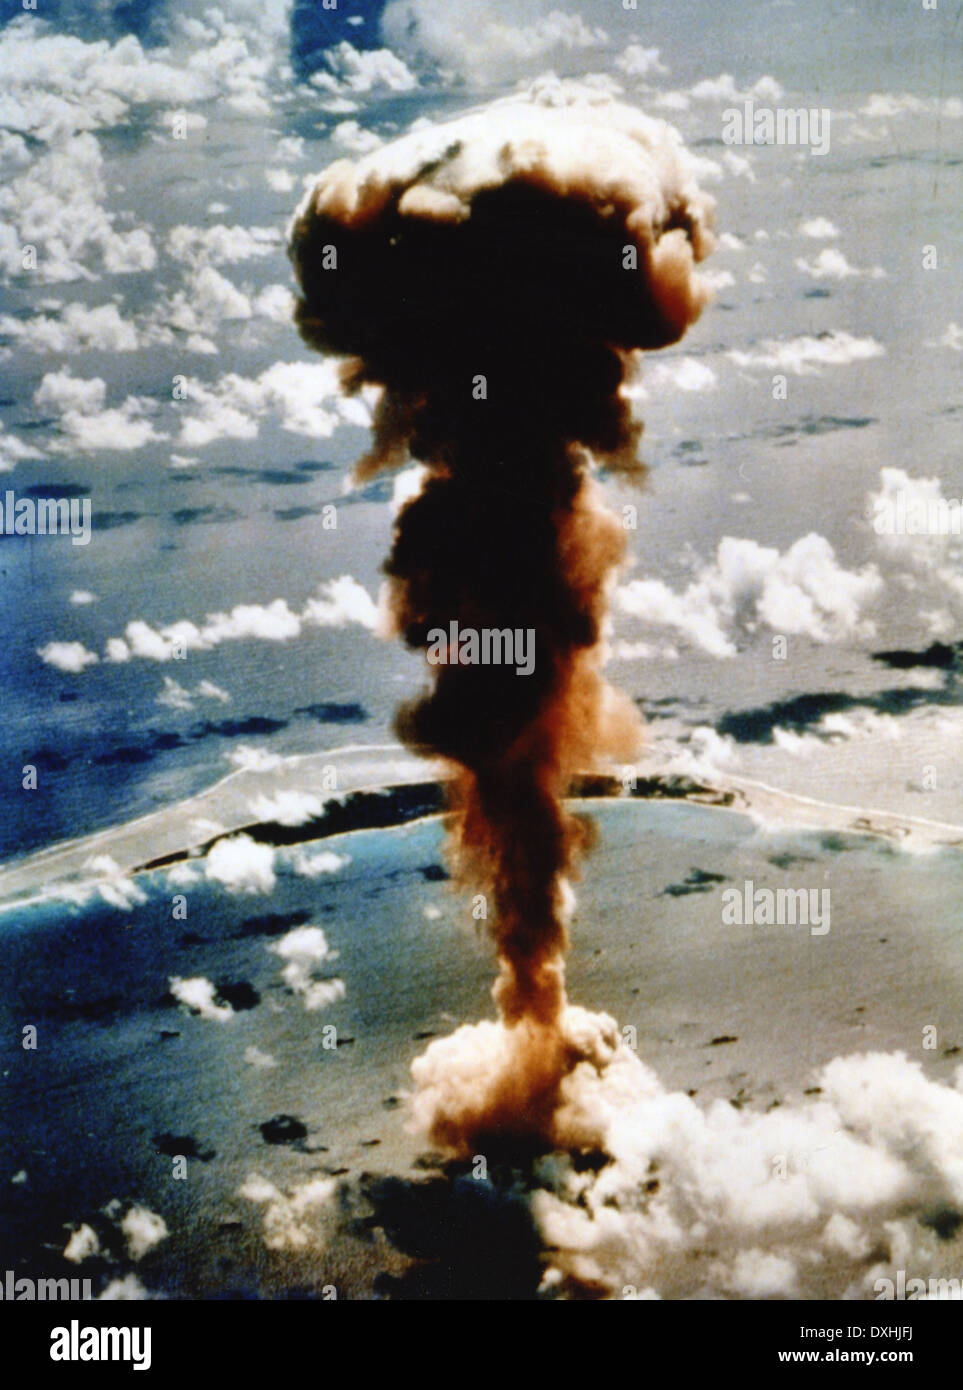 Test de bombe atomique explose en mesure à 580ft (180m) au-dessus de l'atoll de Bikini au cours de l'opération Crossroads sur 1 Juillet 1946 Banque D'Images